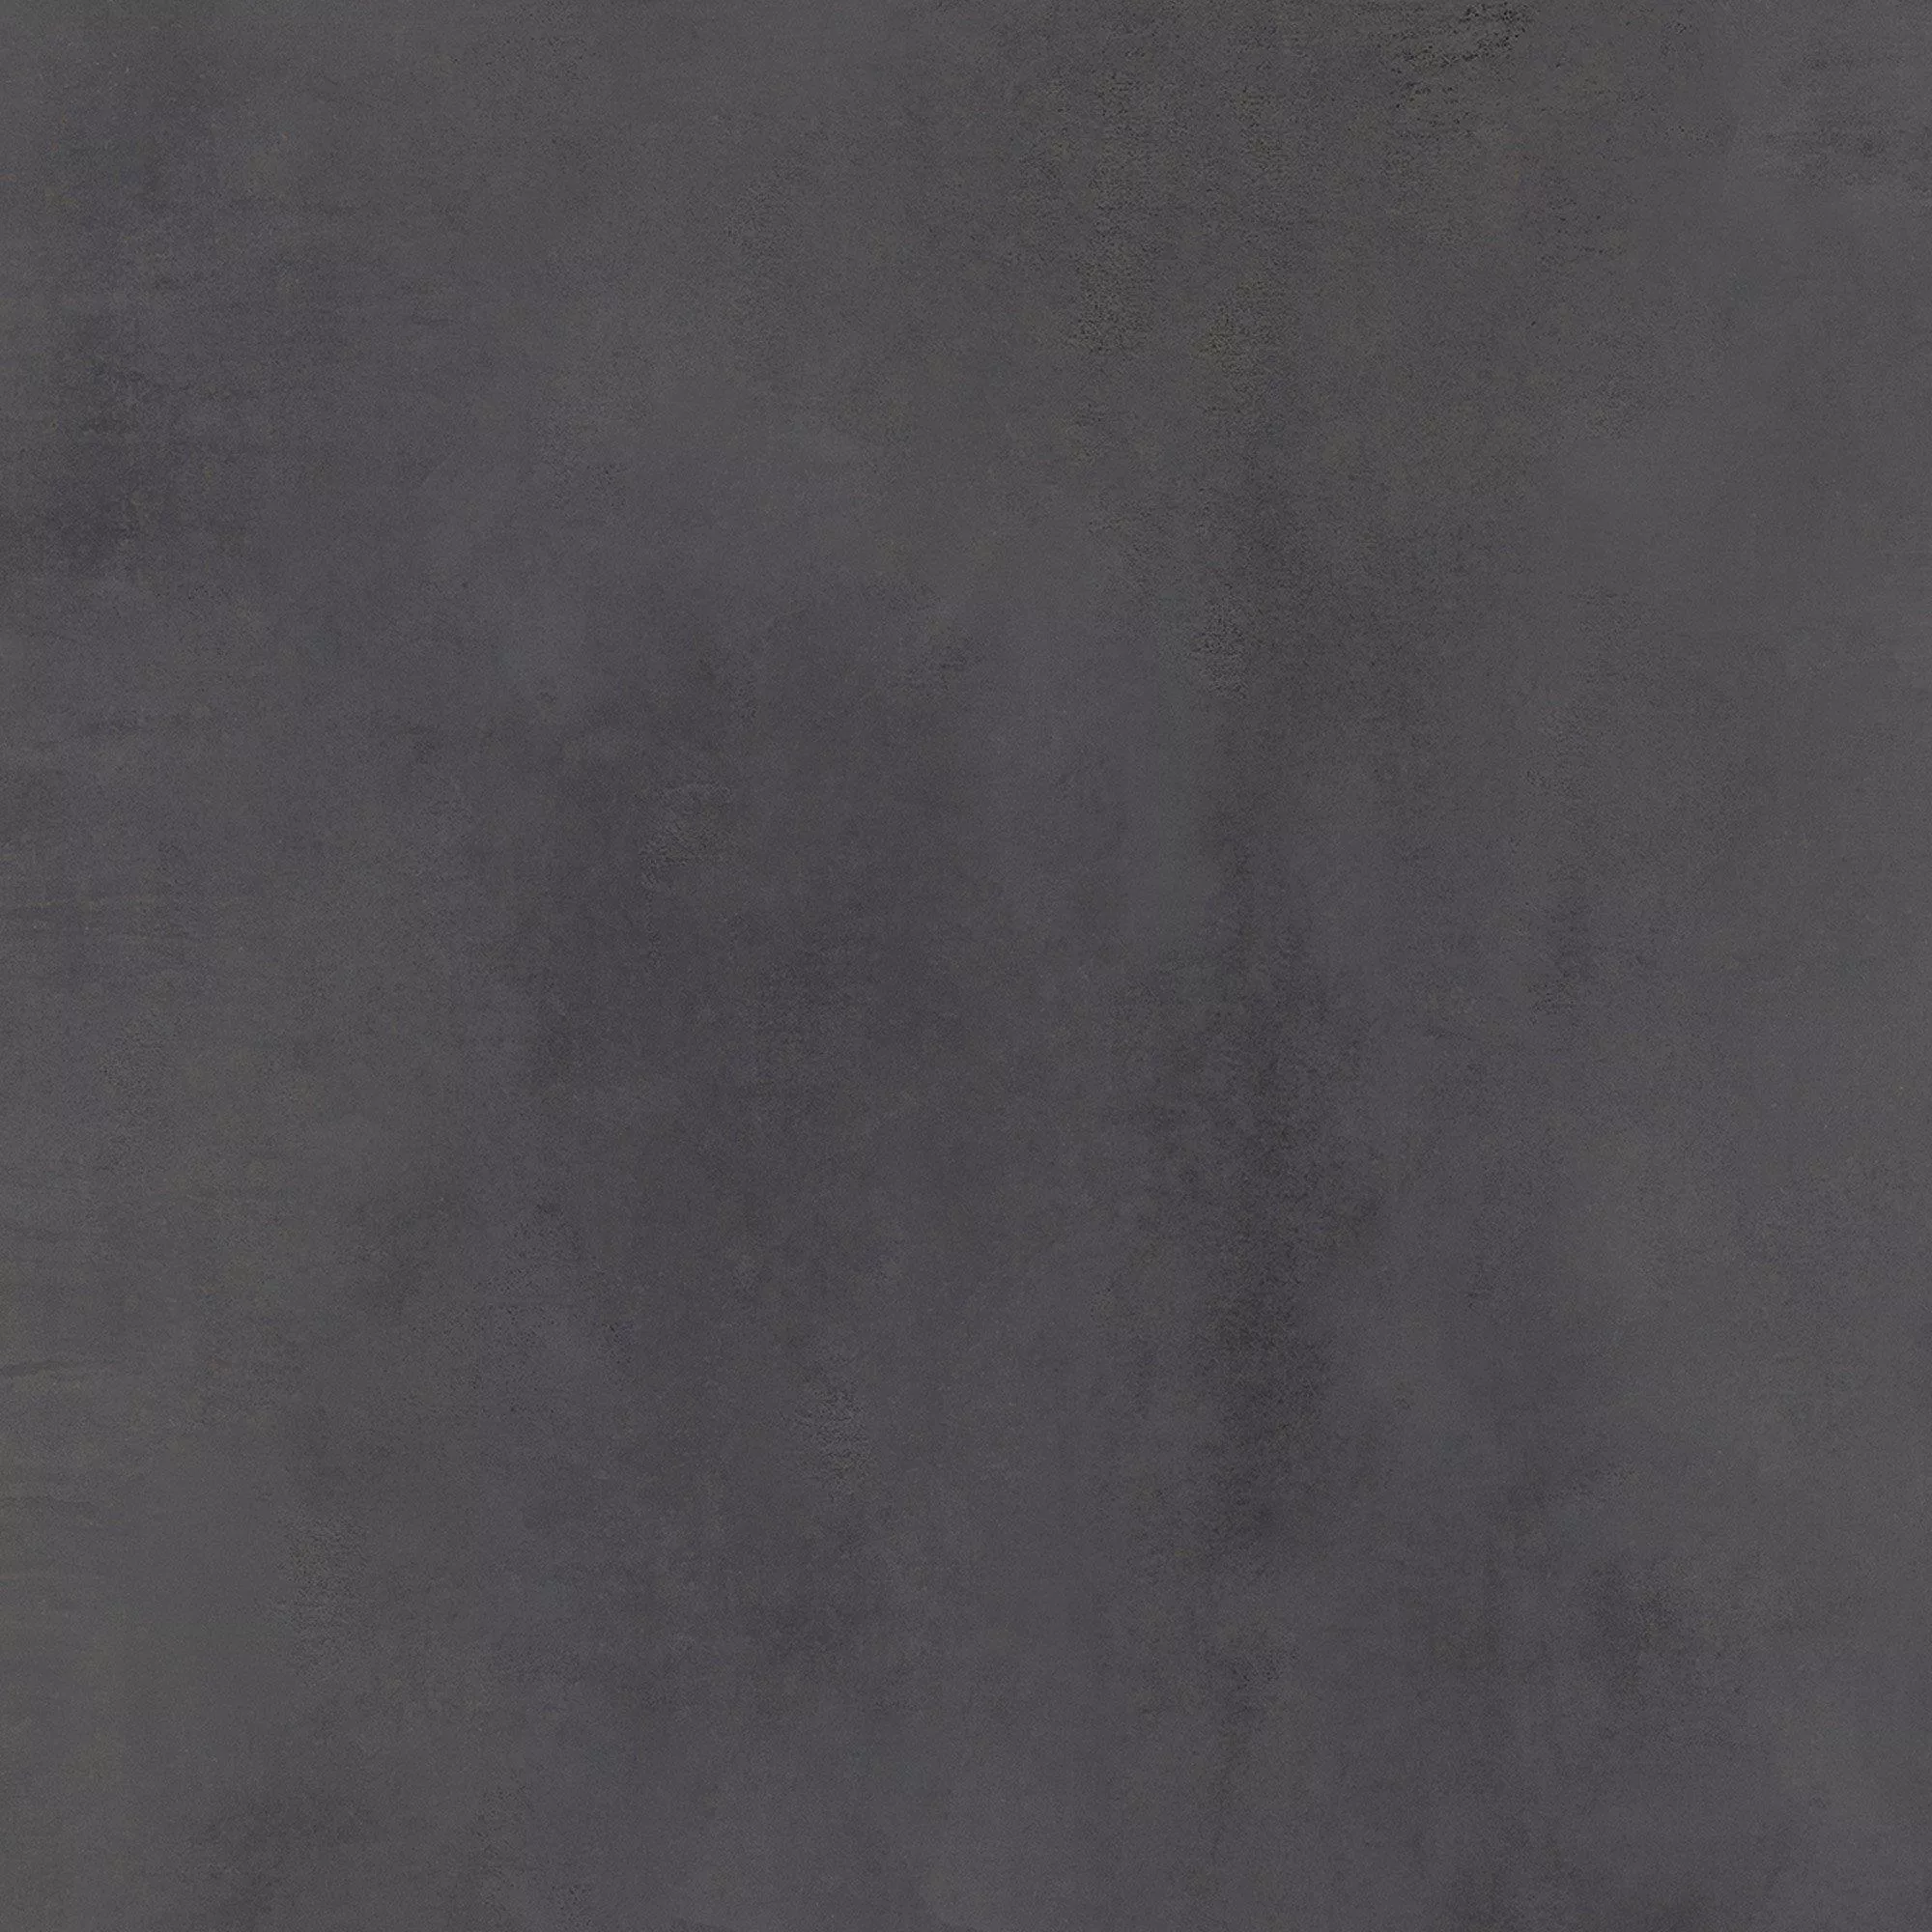 Πρότυπο Πλακάκια Δαπέδου Tycoon Συγκεκριμένη Εμφάνιση R10 Ανθρακίτης 60x60cm